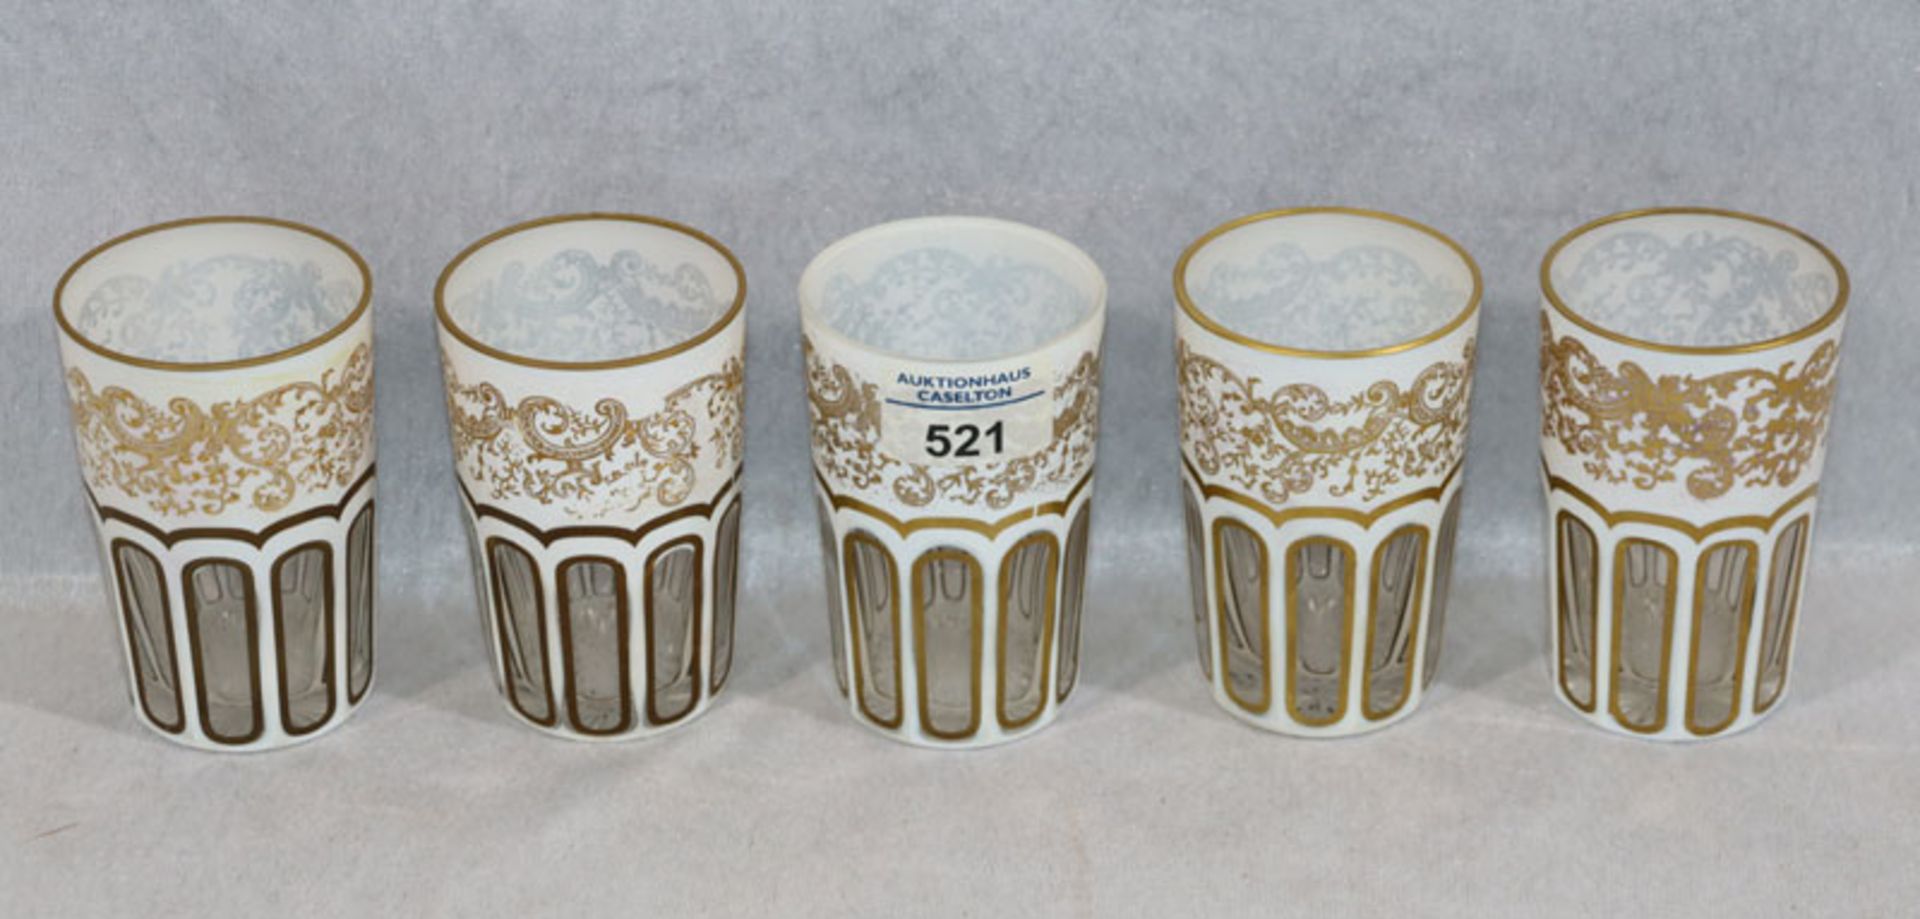 5 weiße Überfang Glasbecher mit Schliffdekor und goldenem Dekor, H 10 cm, D 6,5 cm, teils bereiben